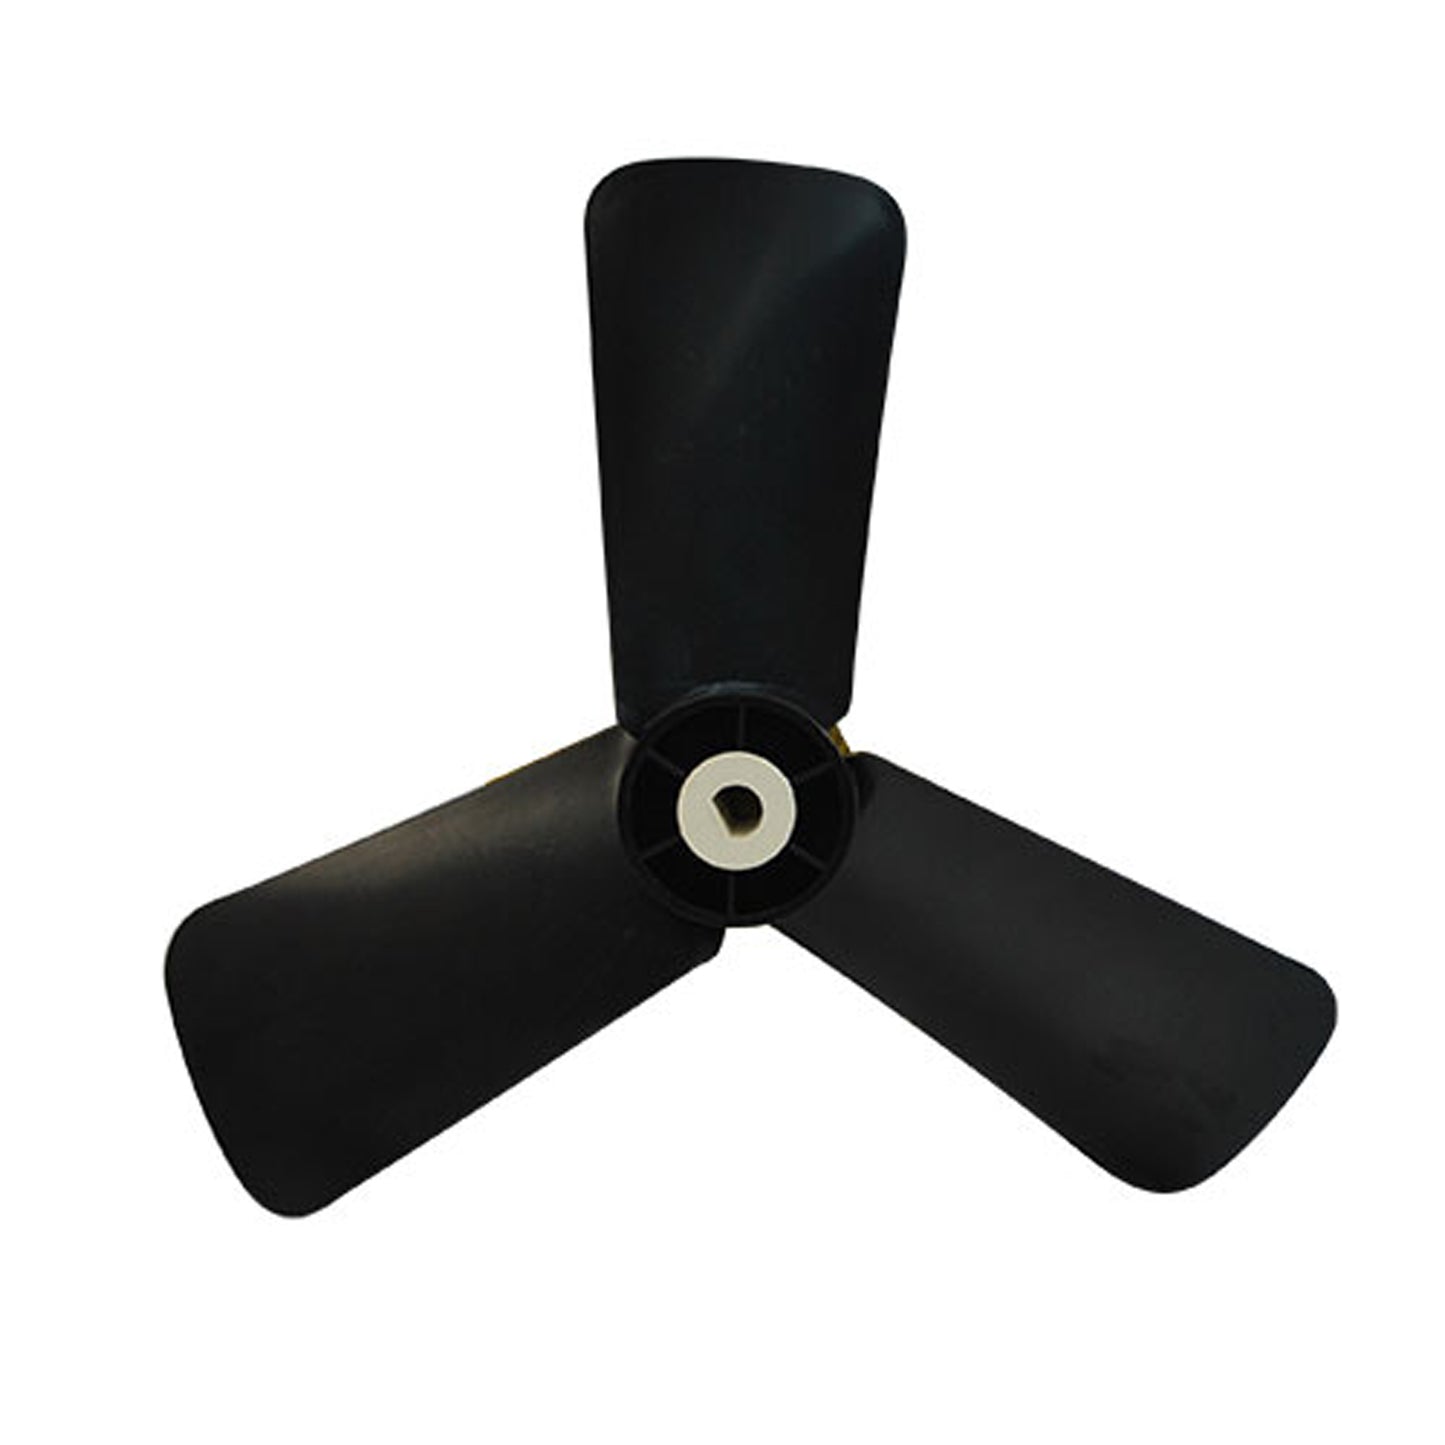 Fan Blade for Vertical Blower Models BR-450, BR-450L, BR-460, BR-460L